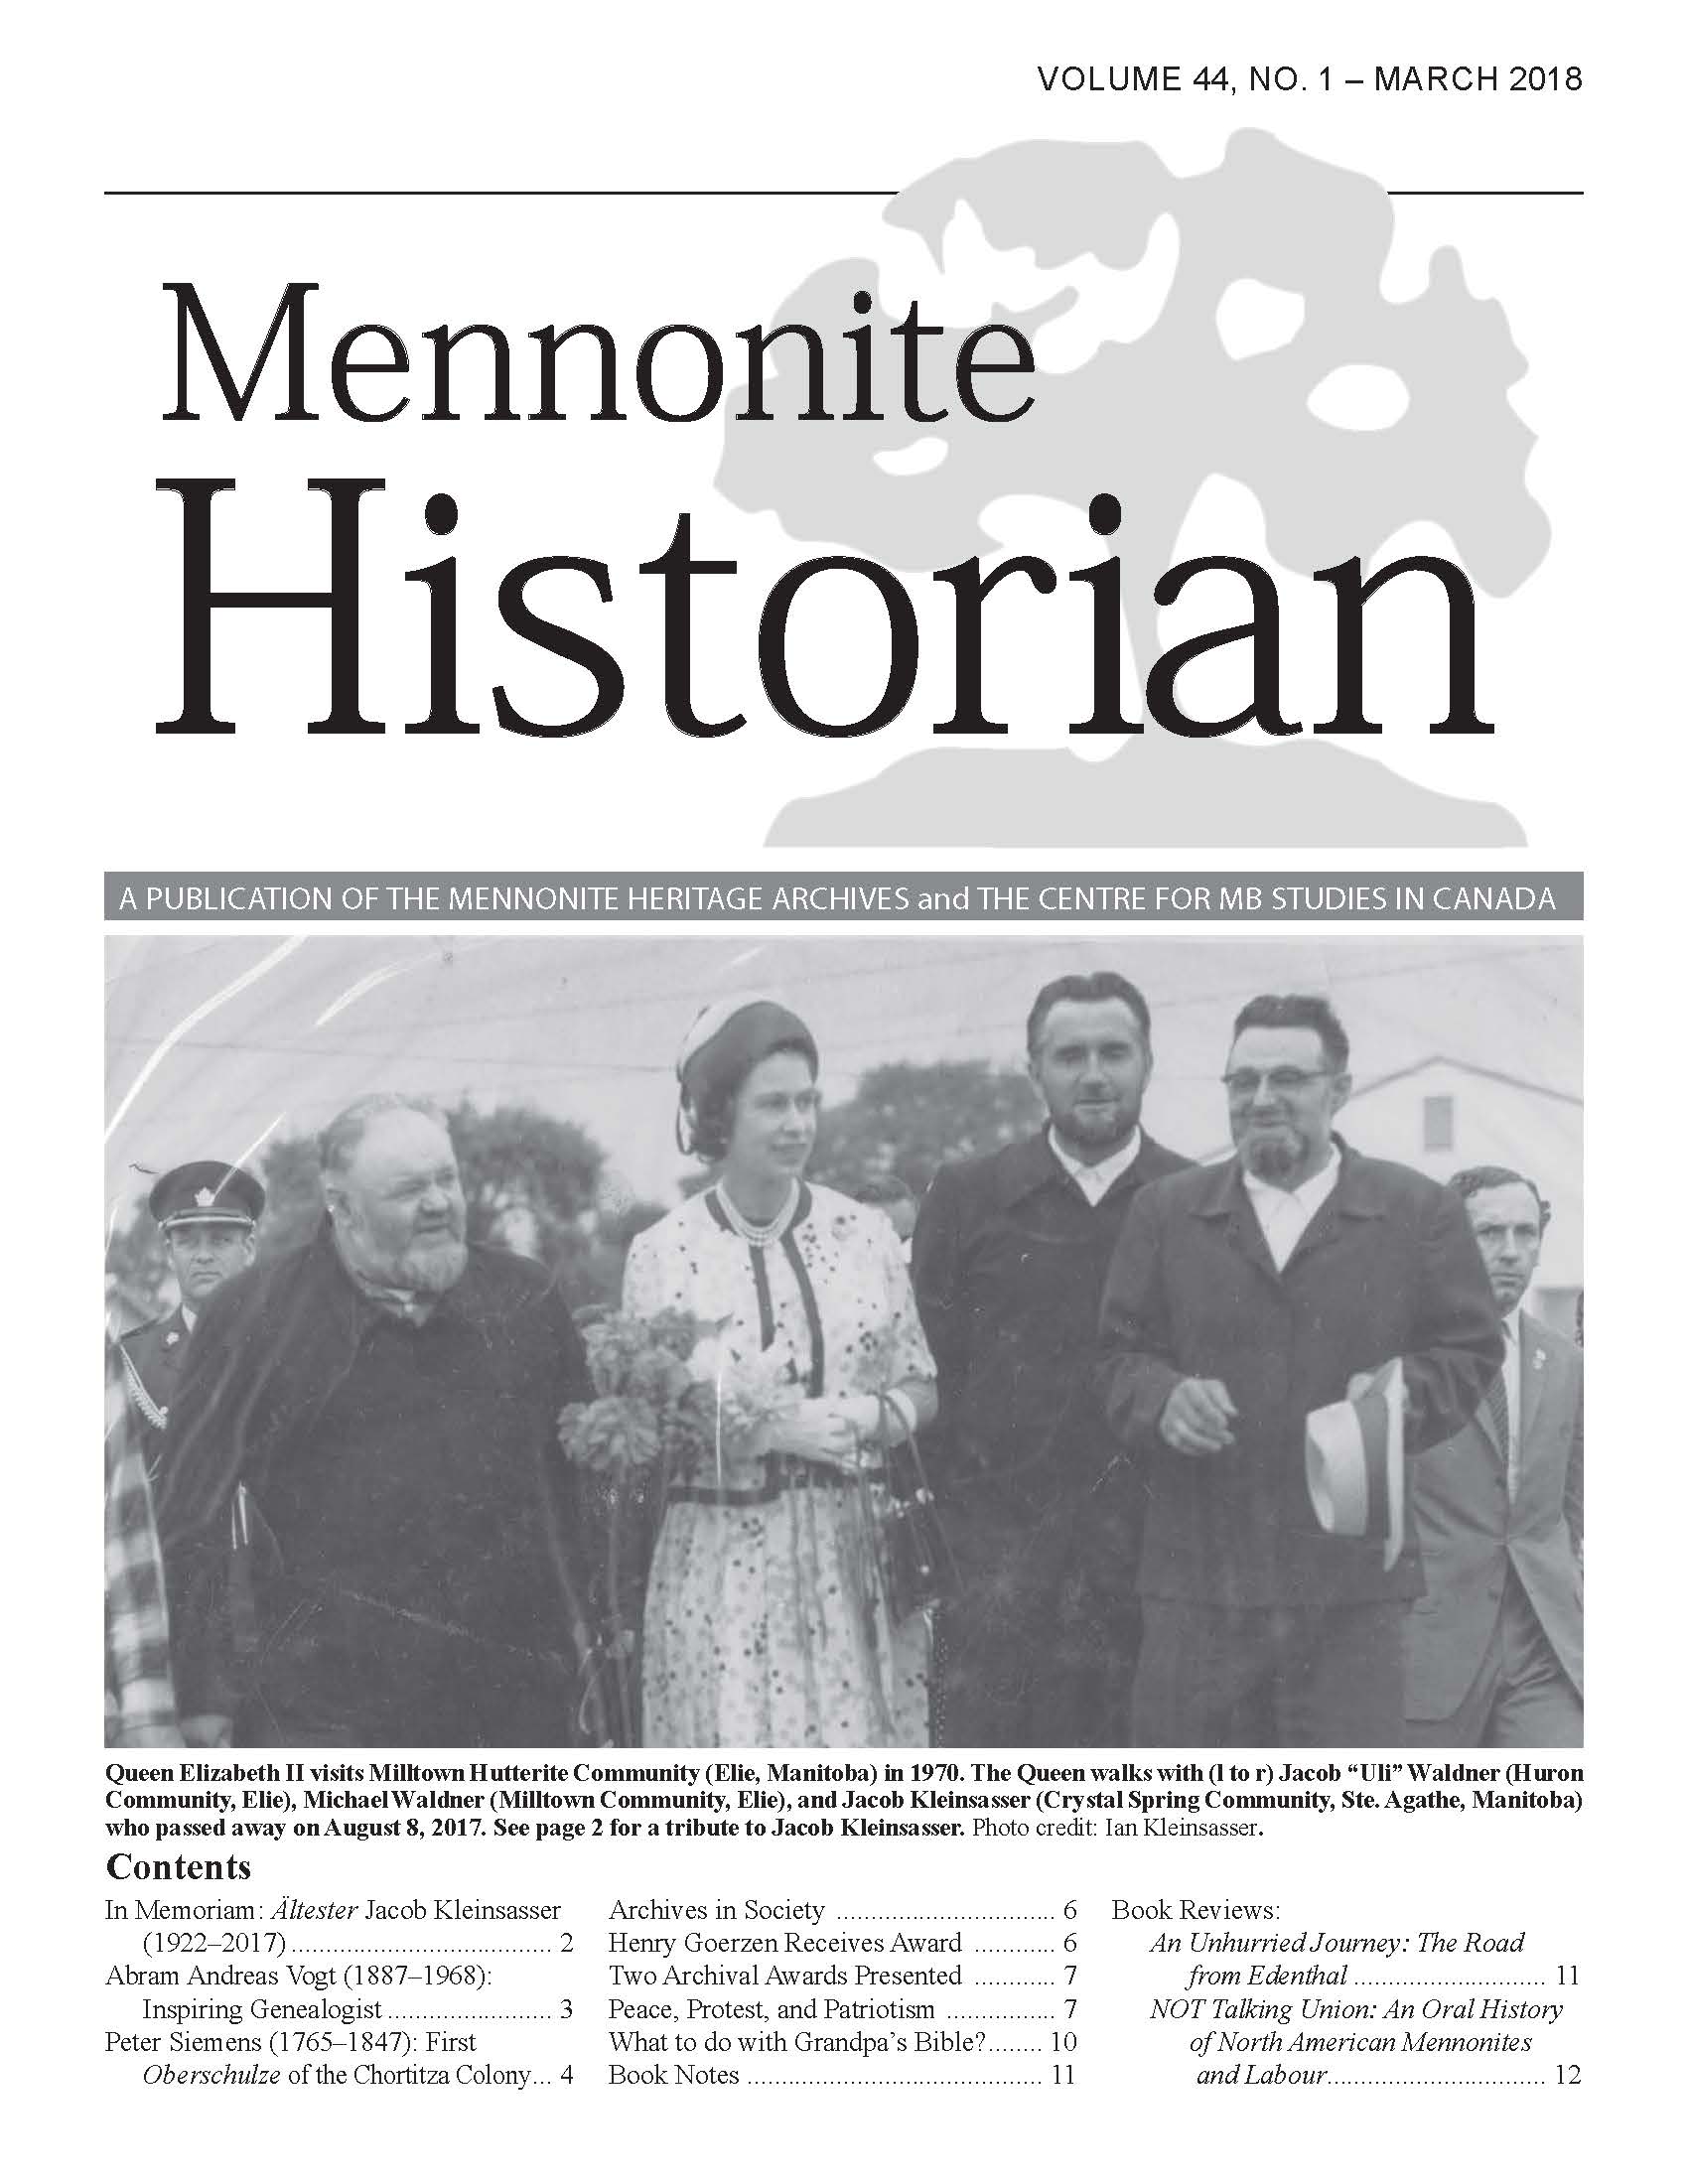 Mennonite Historian (March 2018)